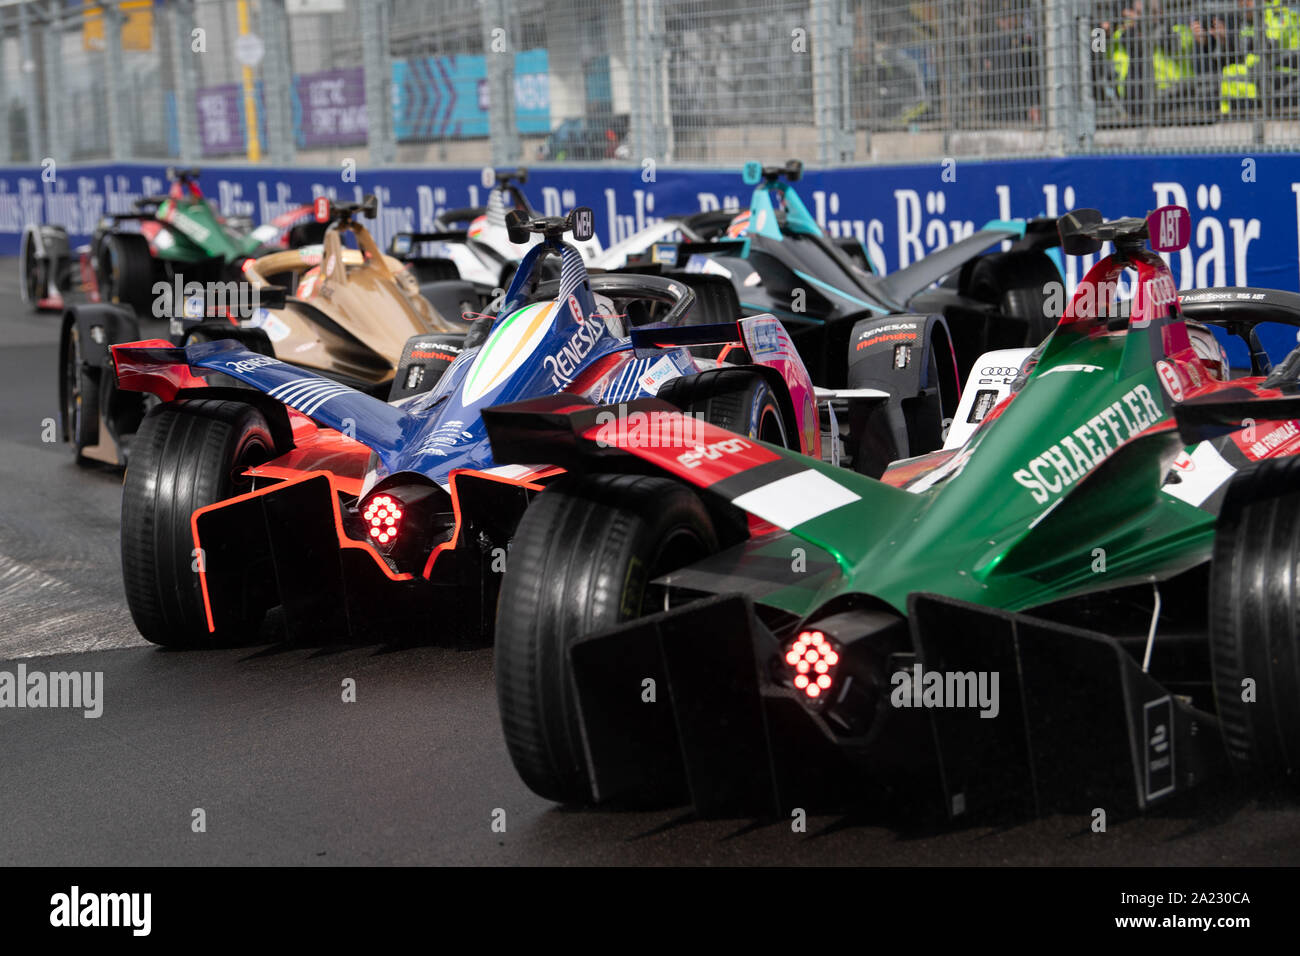 INCIIDENTE SECONDO GIRO durante l'abb del campionato FIA di Formula e Roma Italia , roma, Italia, 13 Apr 2019, motori Formula E Foto Stock